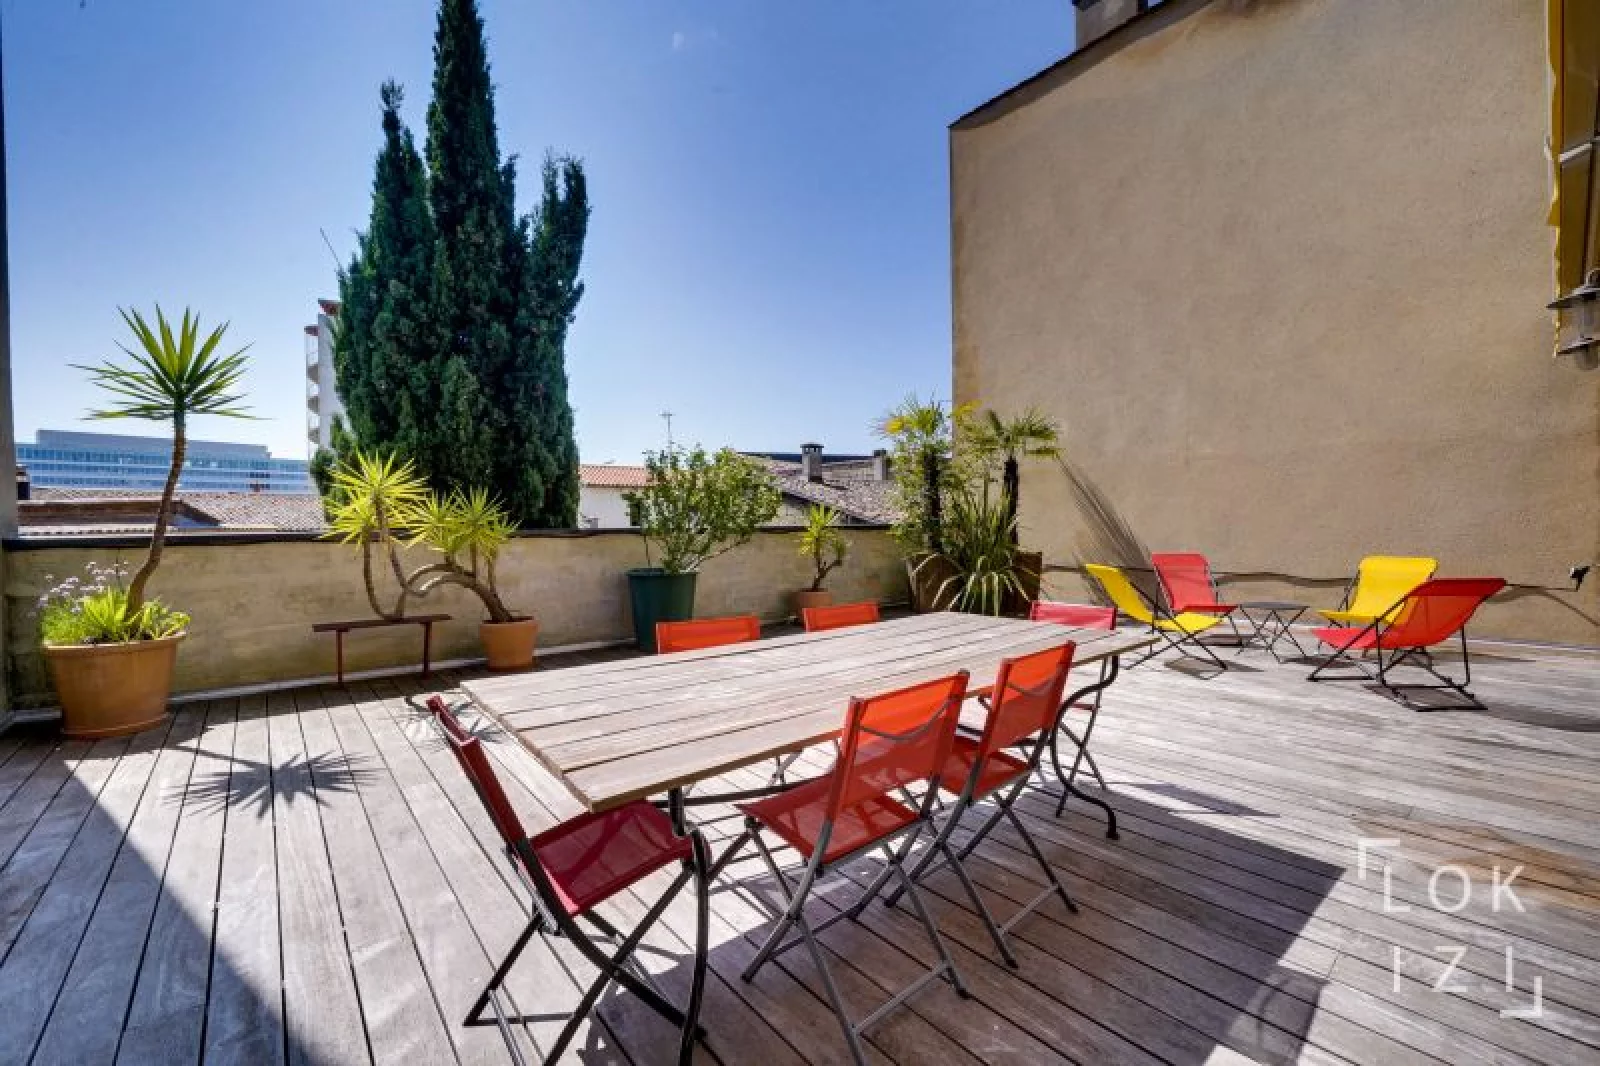 Location appartement meublé 4 pièces 117m² (Bordeaux - Bastide)